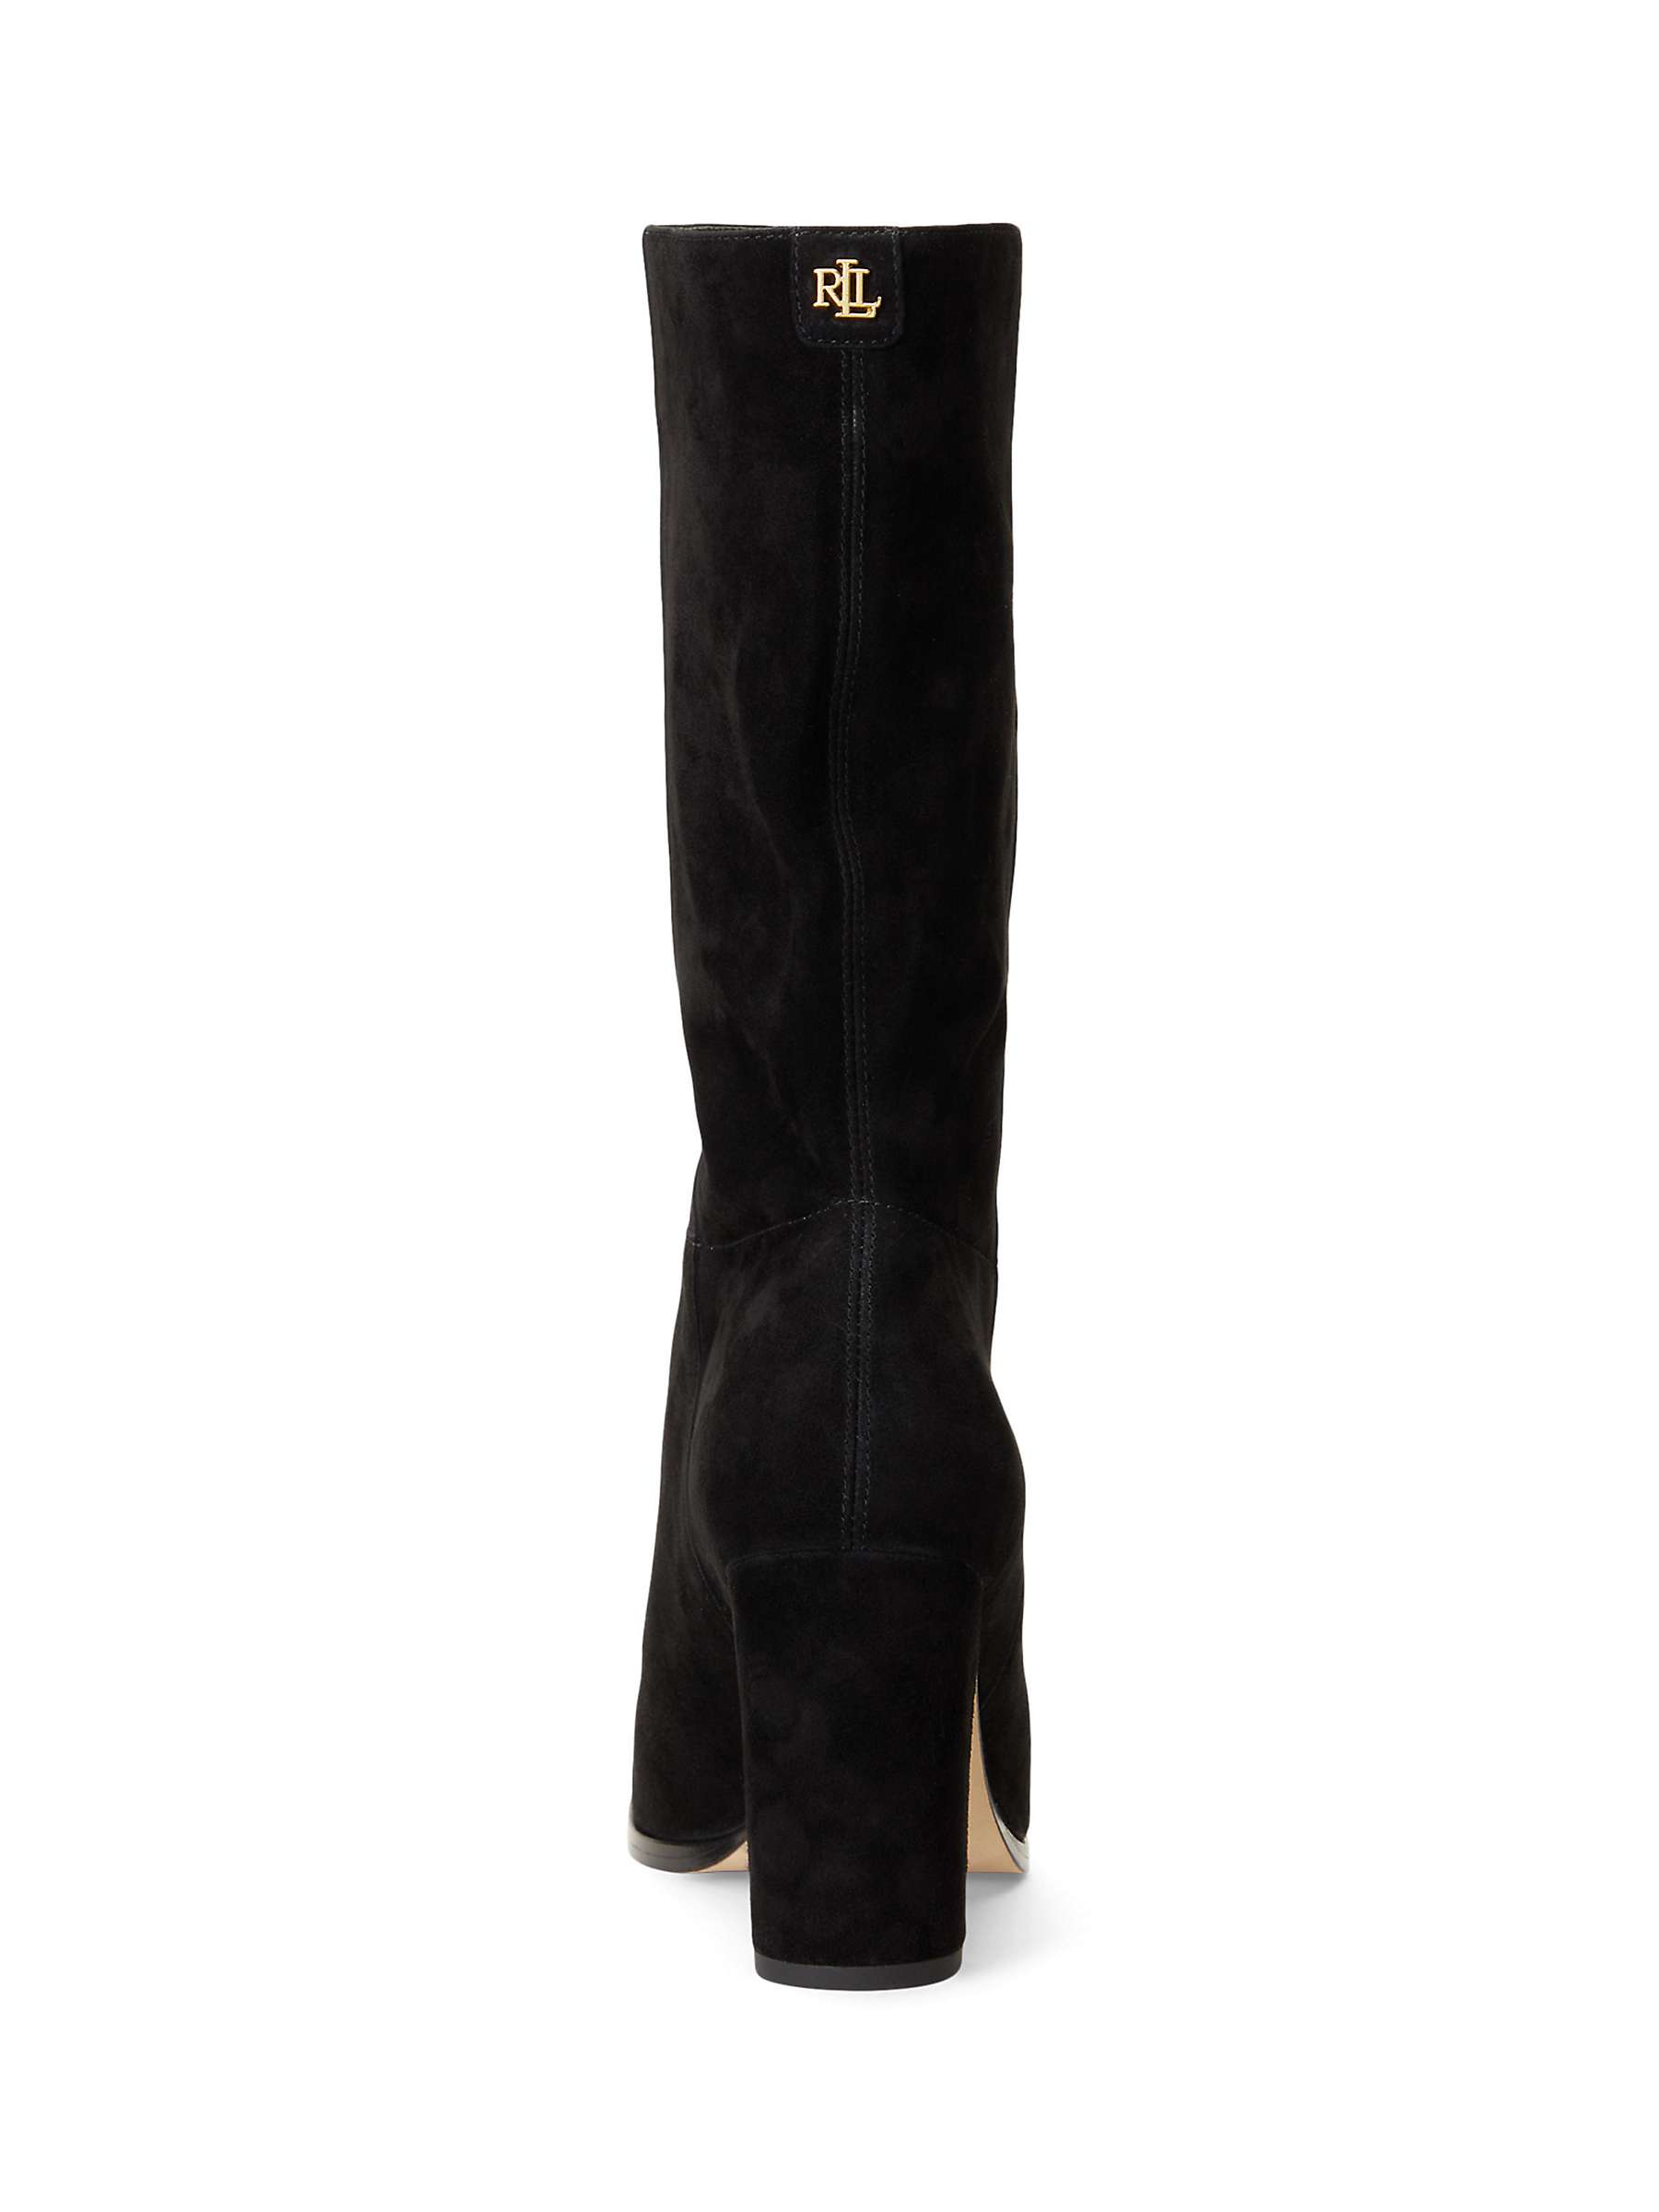 Buy Lauren Ralph Lauren Artizan Suede Heeled Boots Online at johnlewis.com